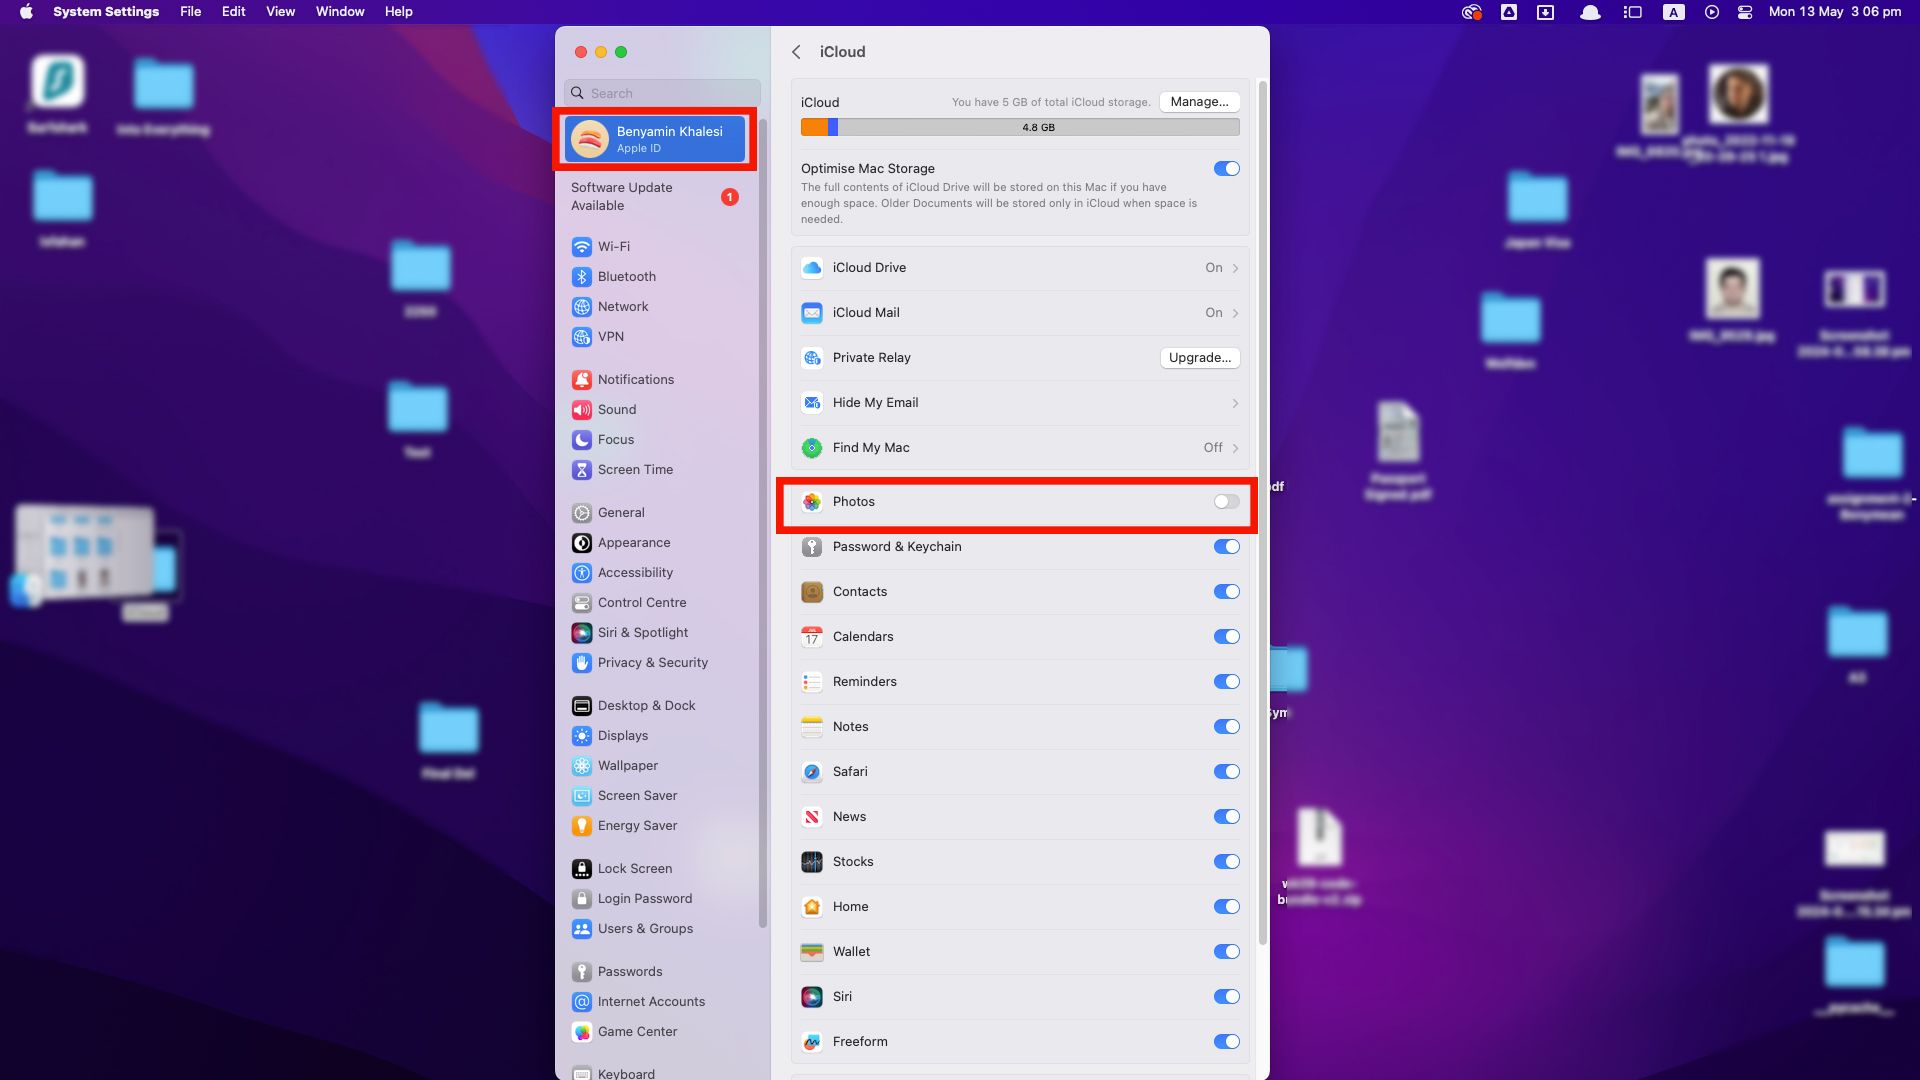 Uma captura de tela das configurações do iCloud em um Mac, mostrando várias opções como iCloud Drive, iCloud Mail e Fotos com o botão de alternância para Fotos desativado.